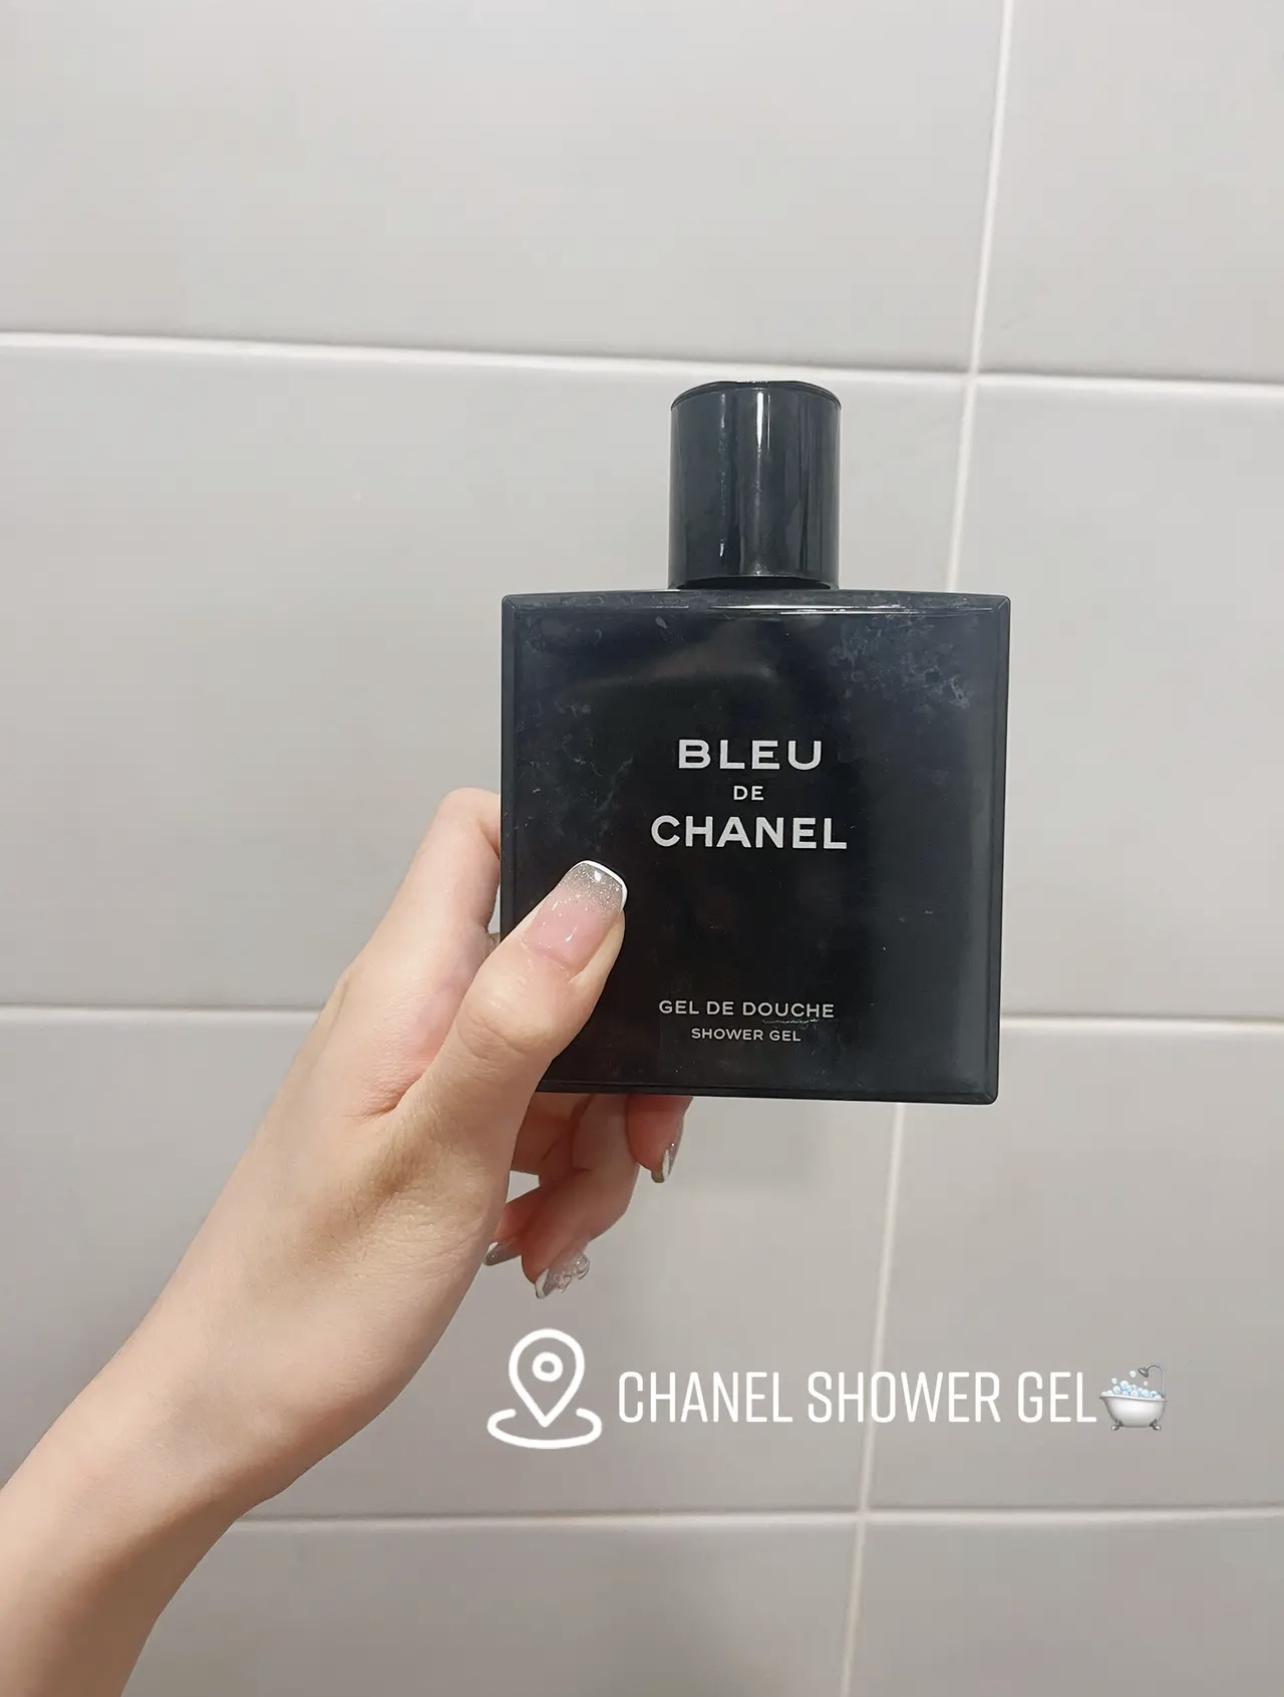 ภาพหน้าปก แปะพิกัด Chanel Shower gel 🛁💗✨ ที่:0